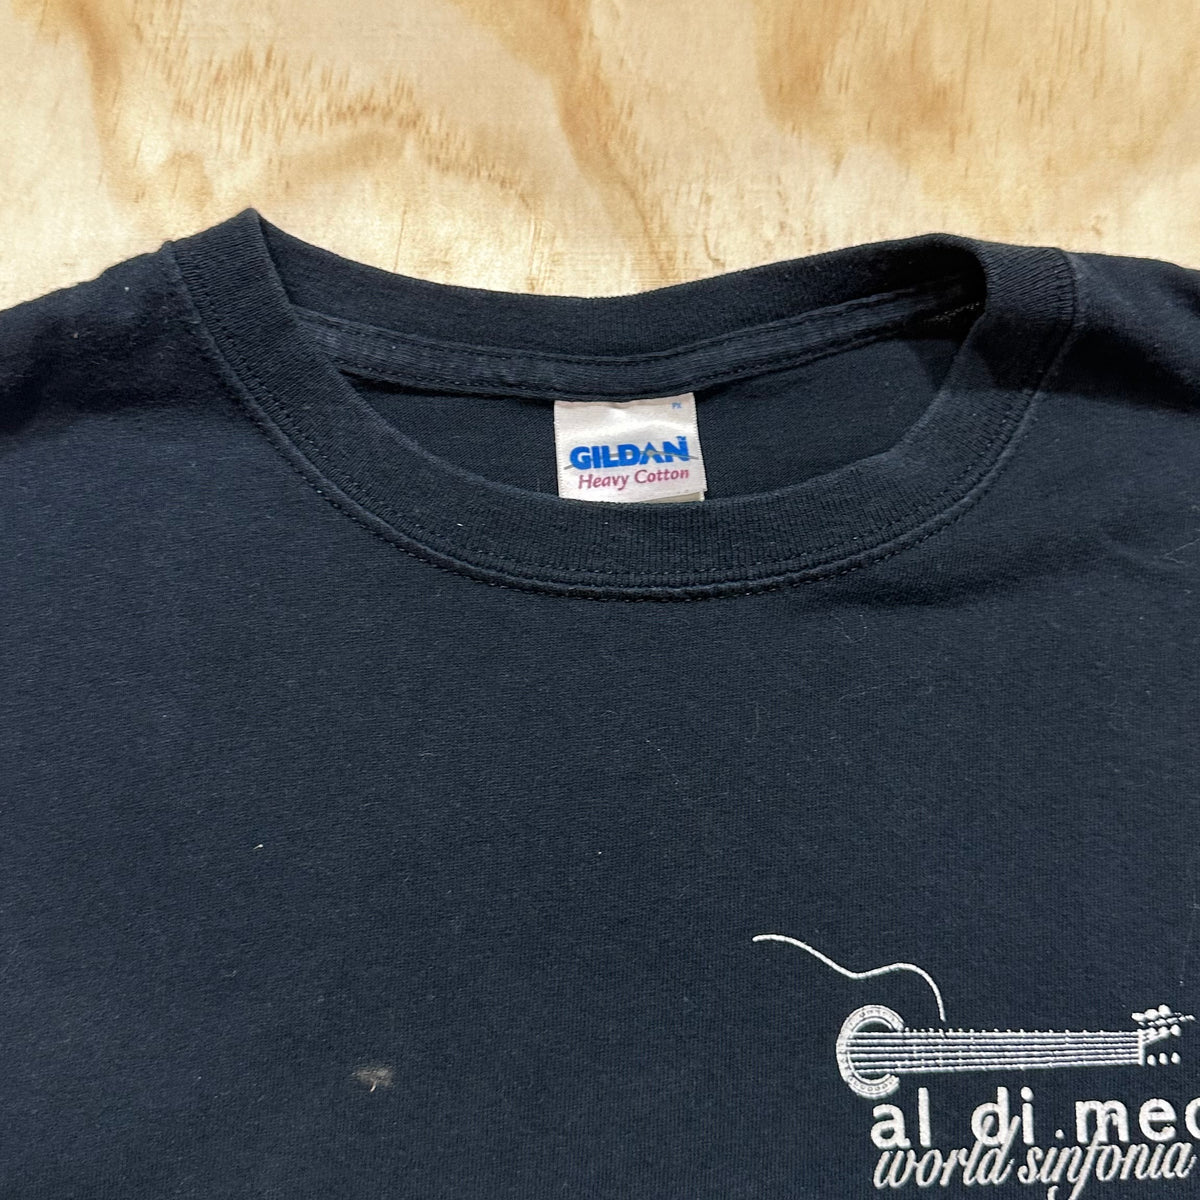 Vintage 90s Al Di Meola World Sinfonia tshirt